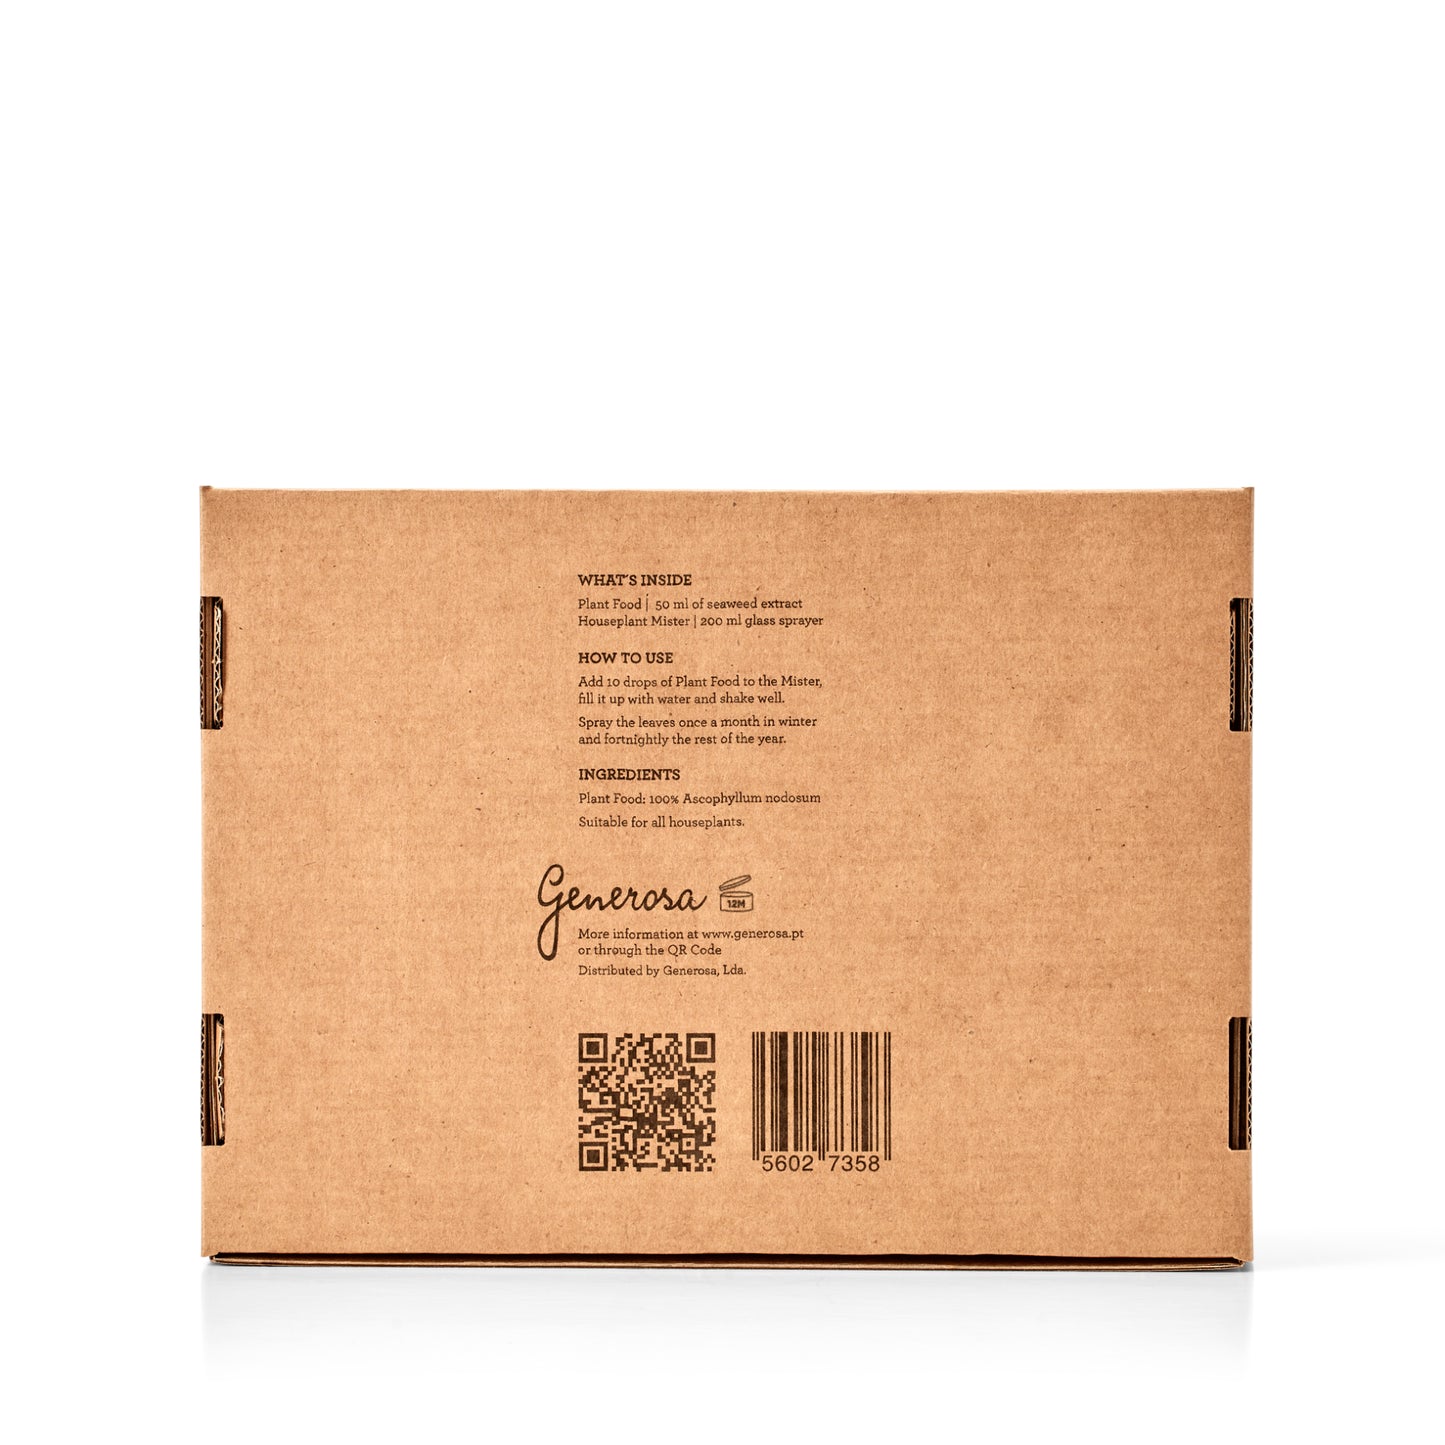 HAUSPFLANZEN GENUSS | Geschenkpackung(Karton mit 4 Einheiten) 